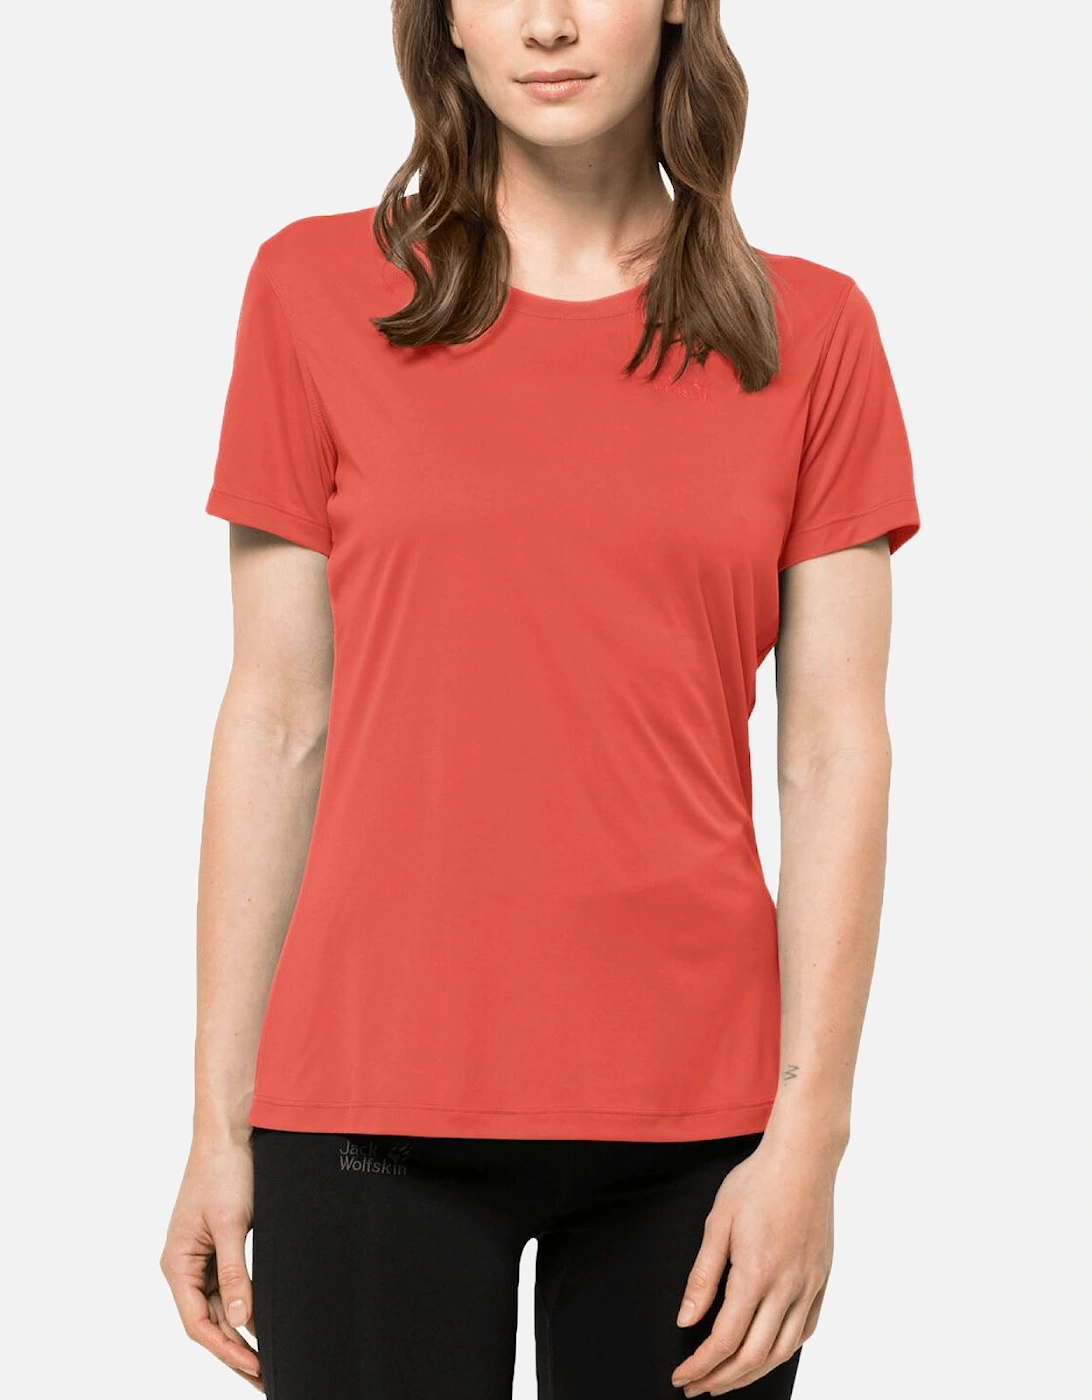 Womens Tech Short Sleeve Quick Dry T-Shirt